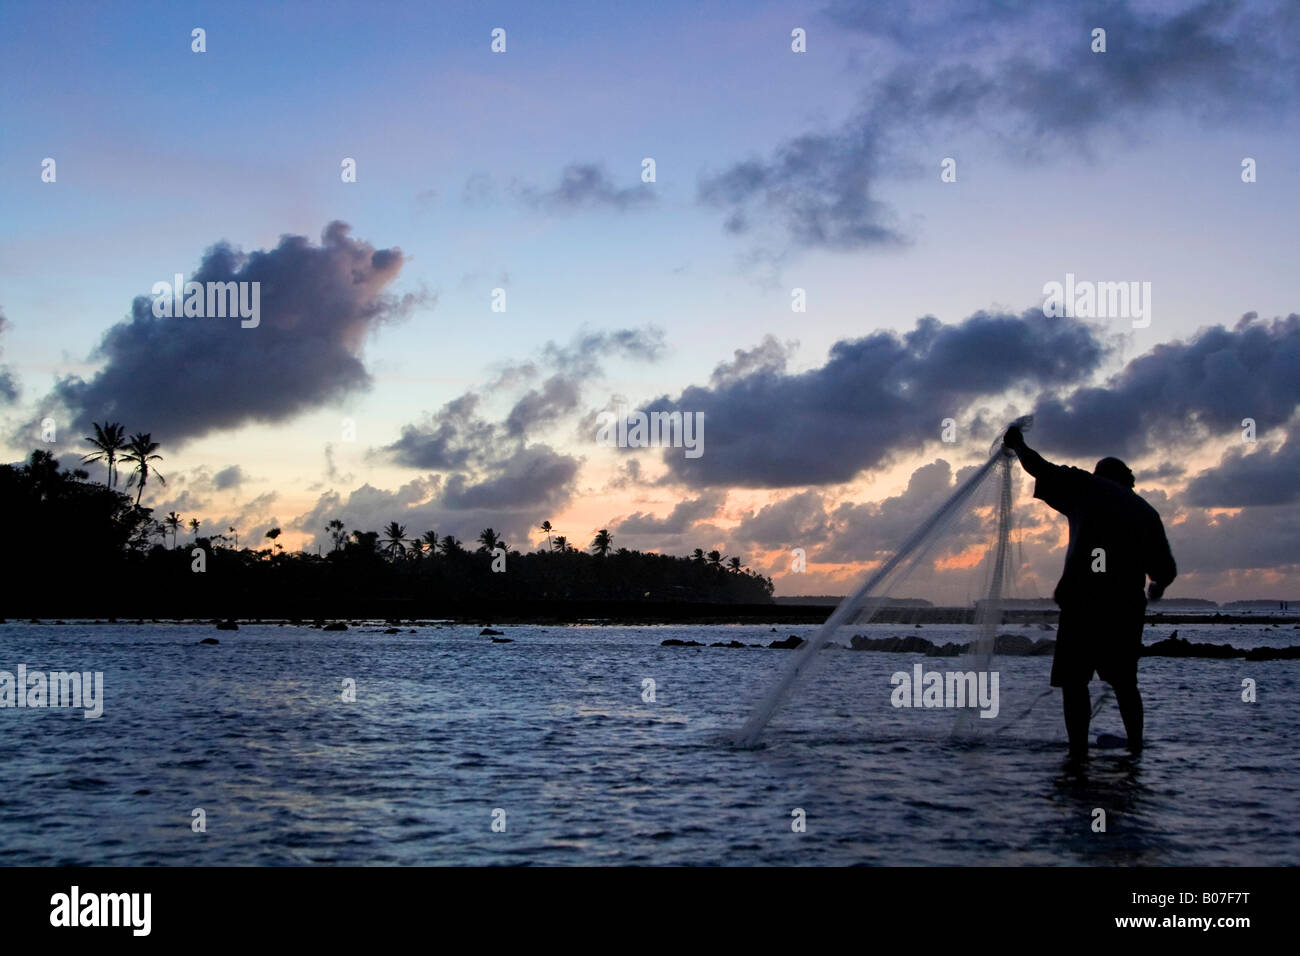 El pescador, el atolón de Majuro, Islas Marshall Foto de stock